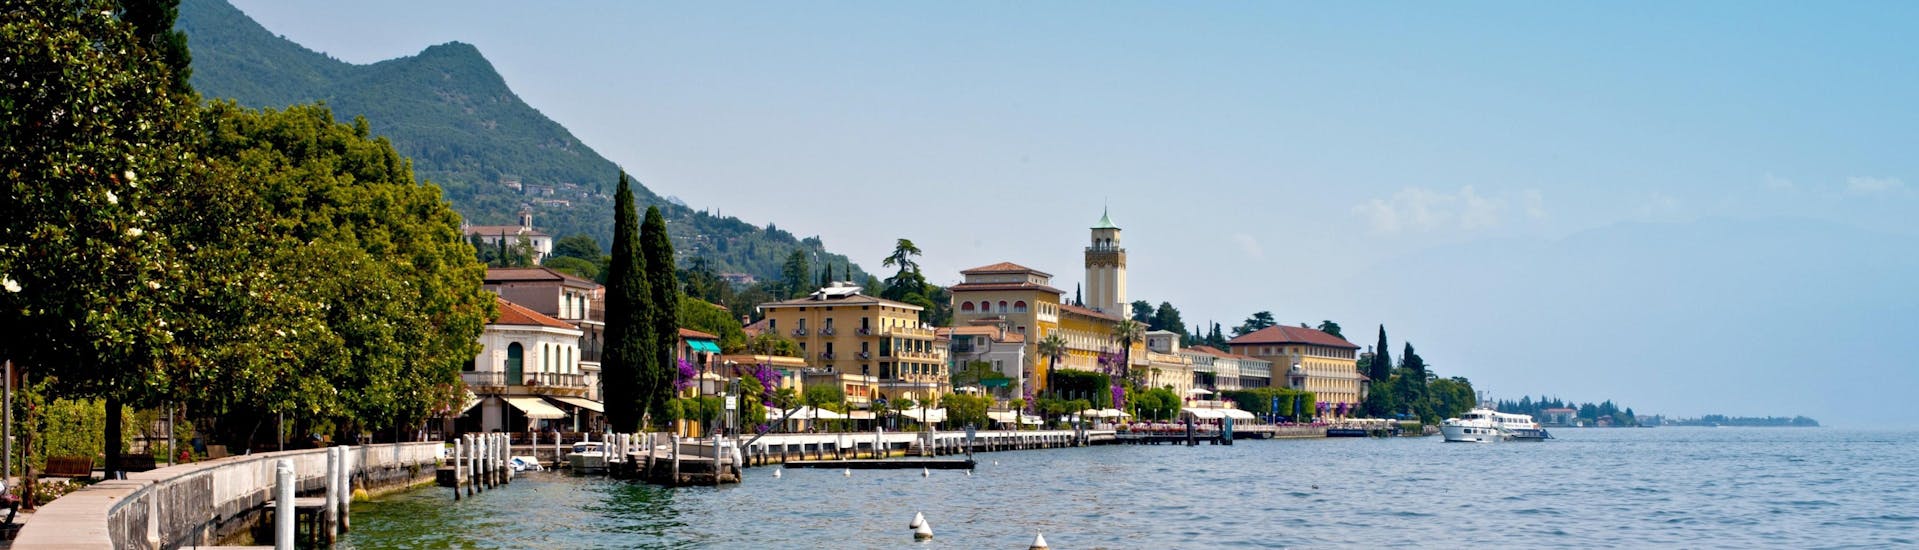 The town of Gardone Riviera along Lake Garda in Italy.